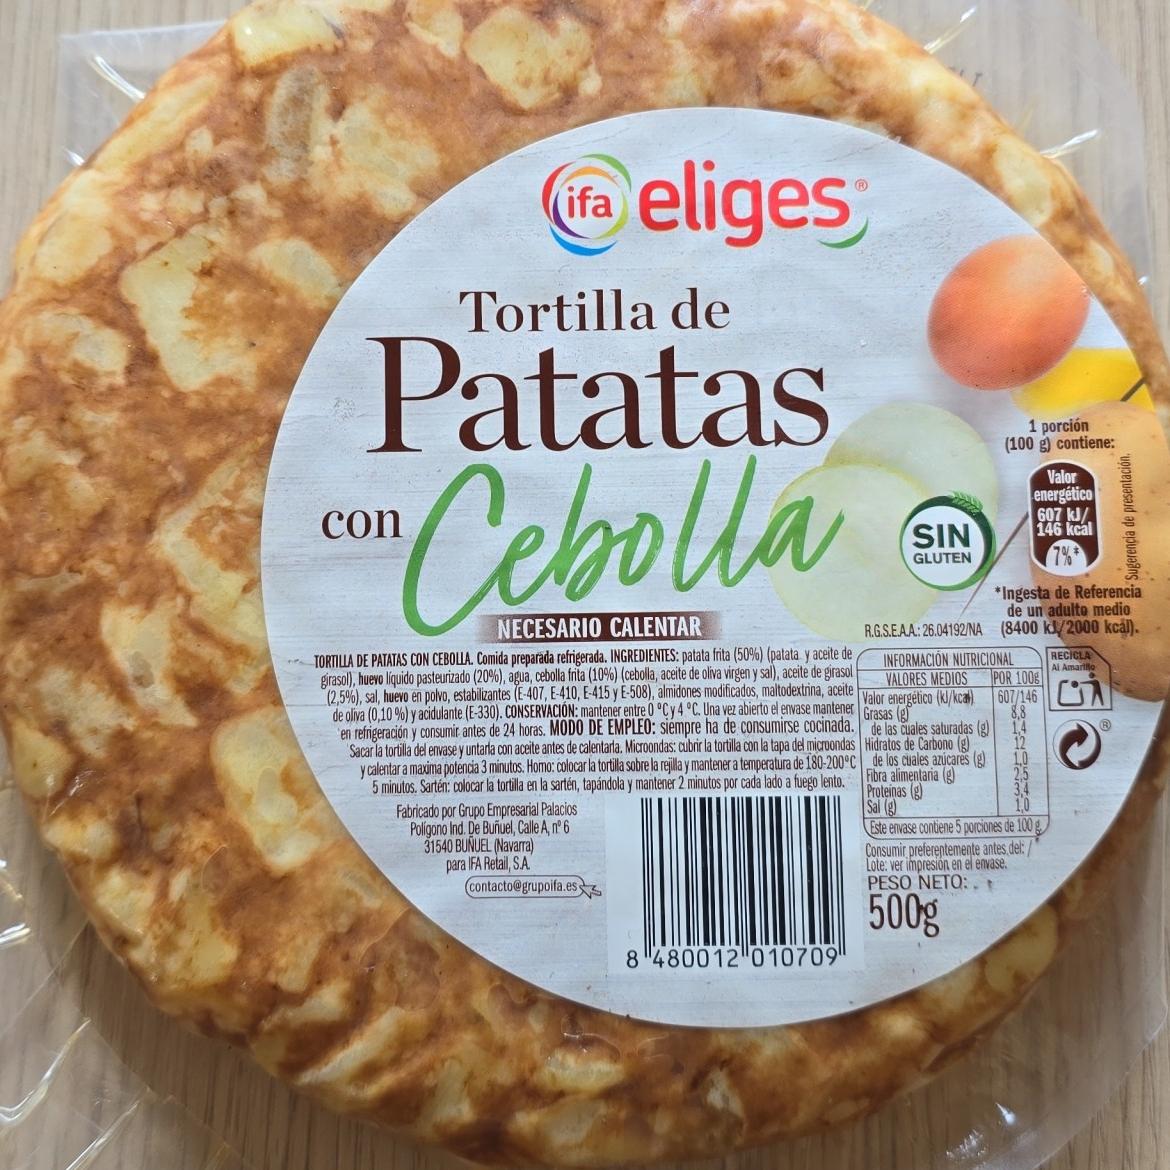 Fotografie - Tortilla de Patatas con Cebolla ifa eliges